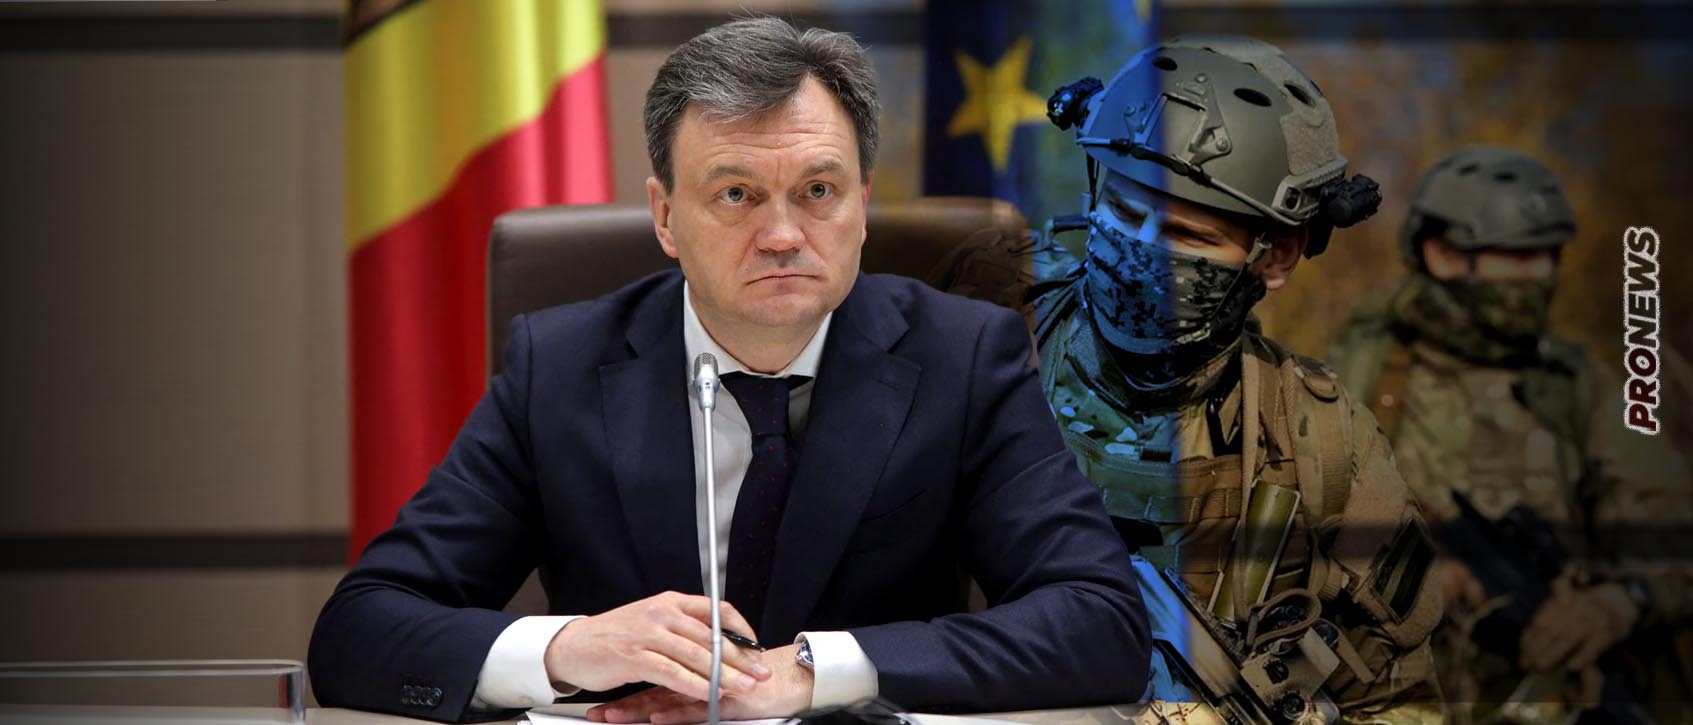 Μολδαβός πρωθυπουργός: «Να εκδιωχθούν τα ρωσικά στρατεύματα από την Υπερδνειστερία»